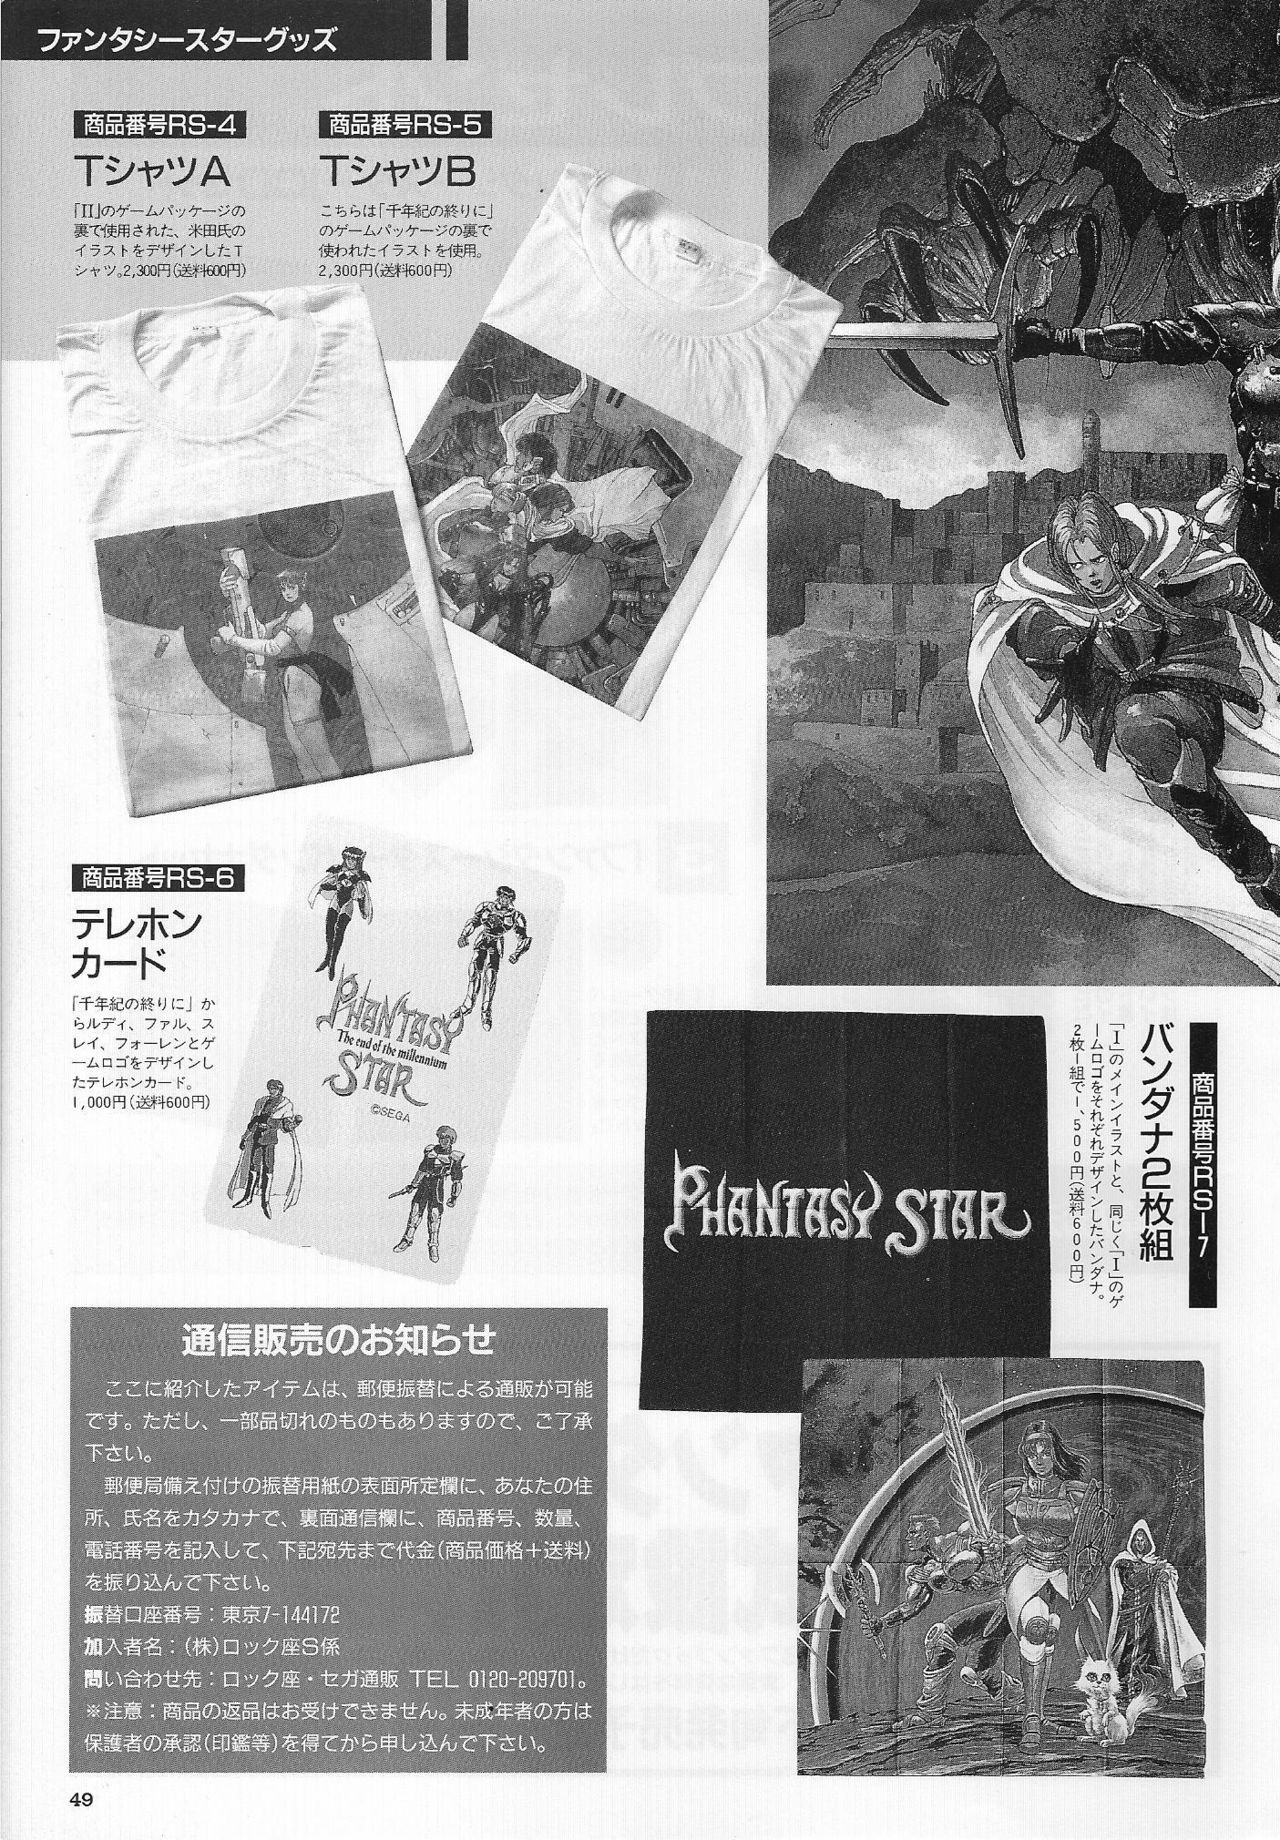 Phantasy Star Memorial Drama CD & Fanbook 2 51